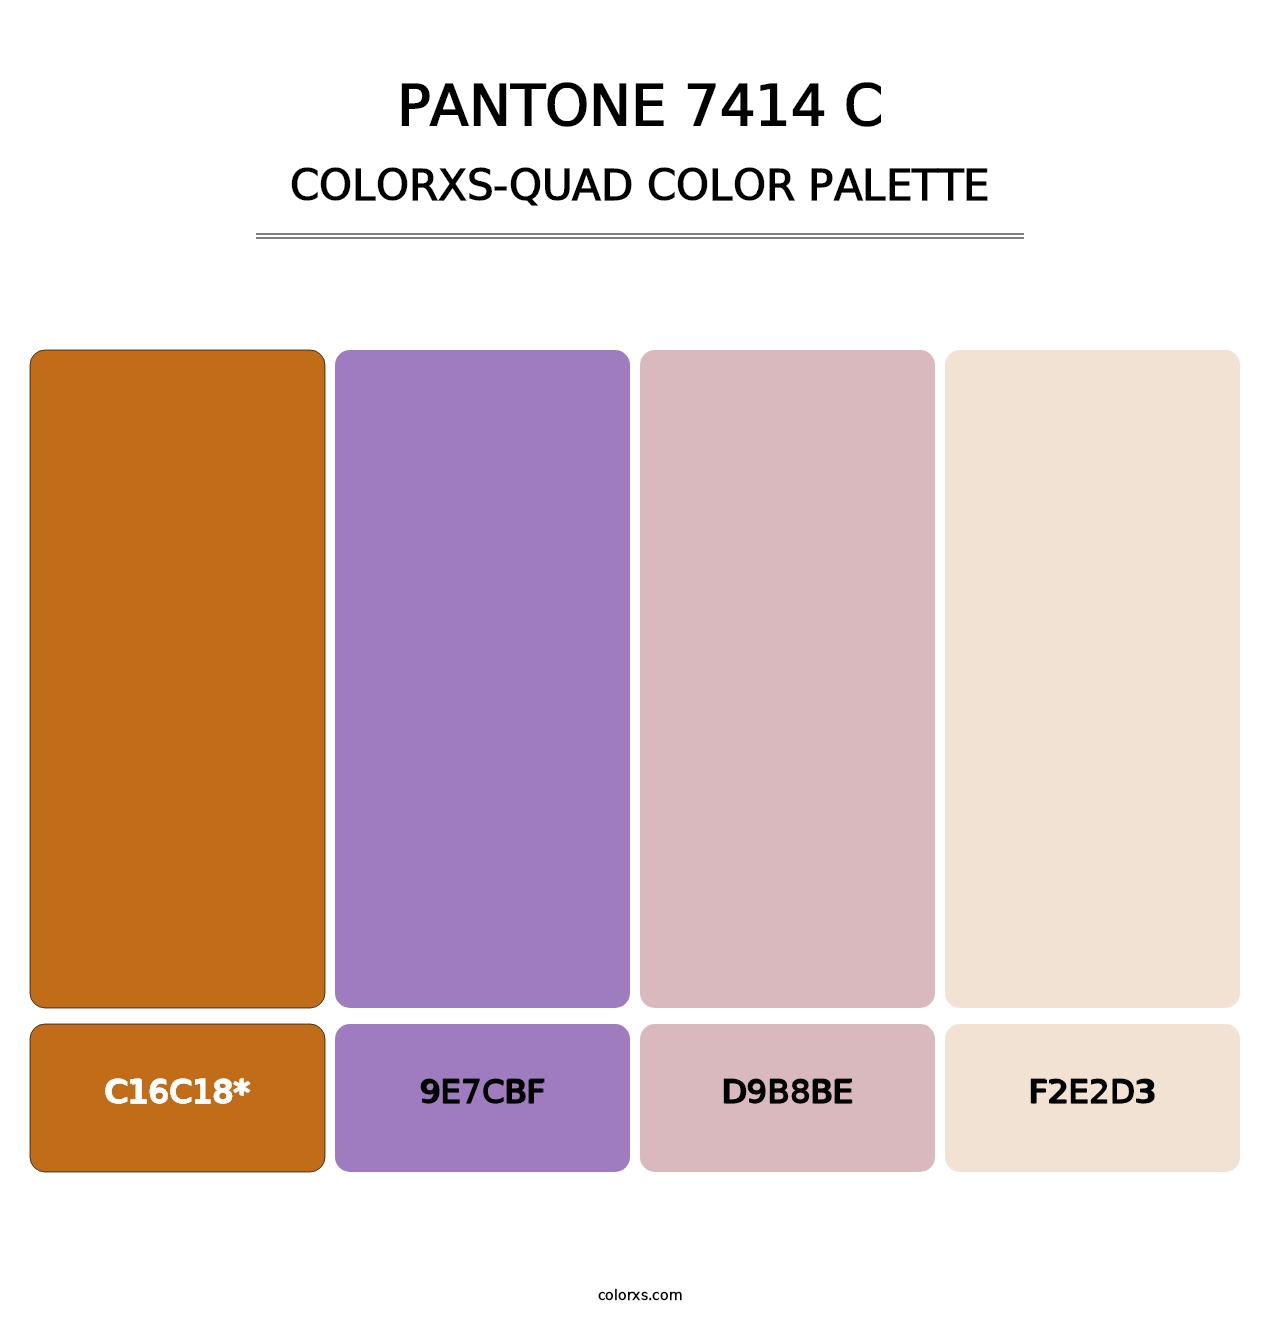 PANTONE 7414 C - Colorxs Quad Palette